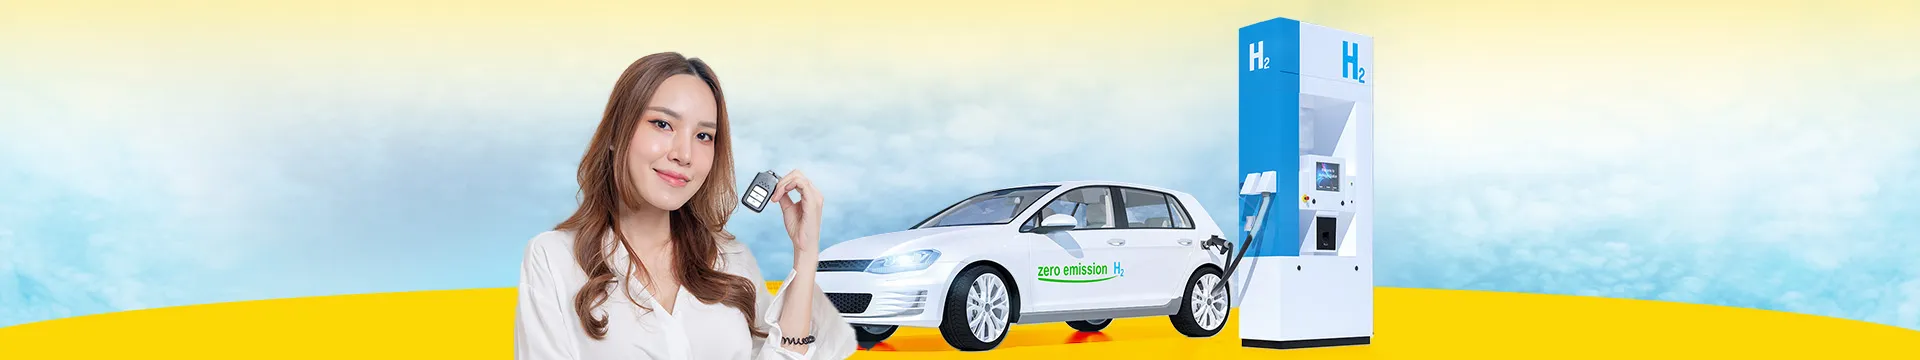 เมื่อโลกไม่ได้มีแต่รถ EV ทำความรู้จักเทคโนโลยีรถพลังงานไฮโดรเจน